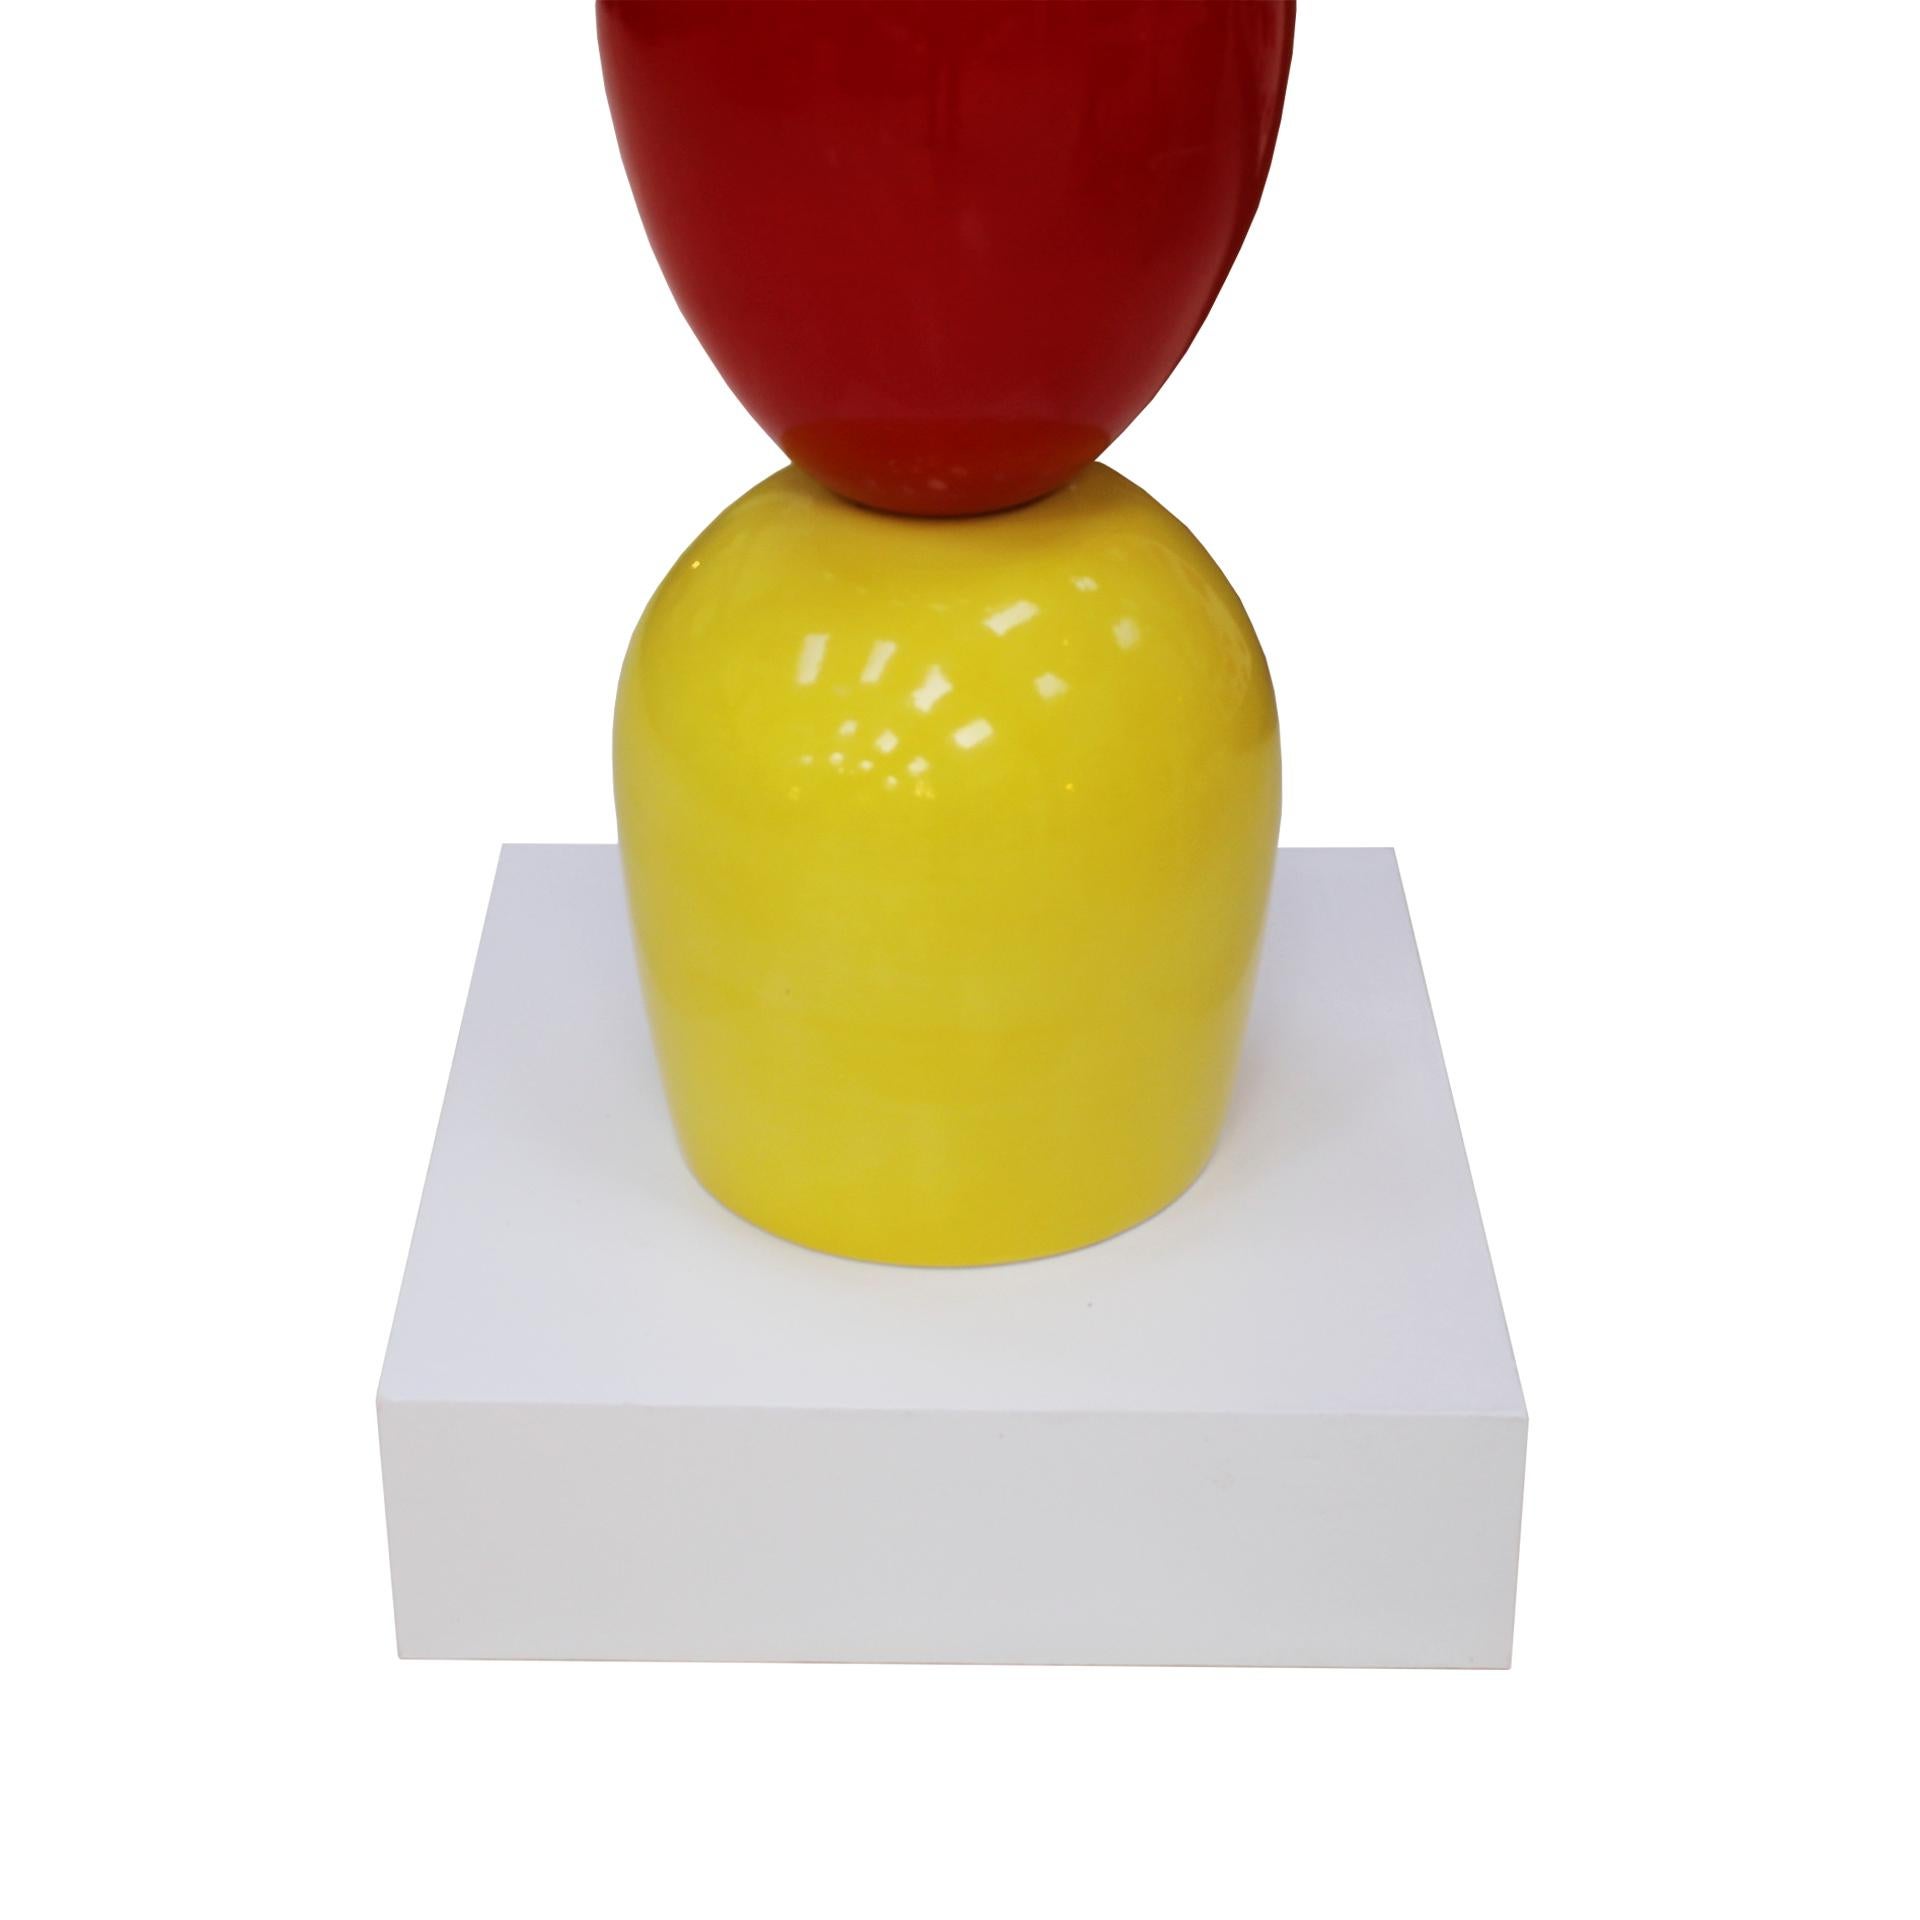 Alessandro Mendini Contemporary Modern Colored Ceramic Italian TOTEM For Sale 2